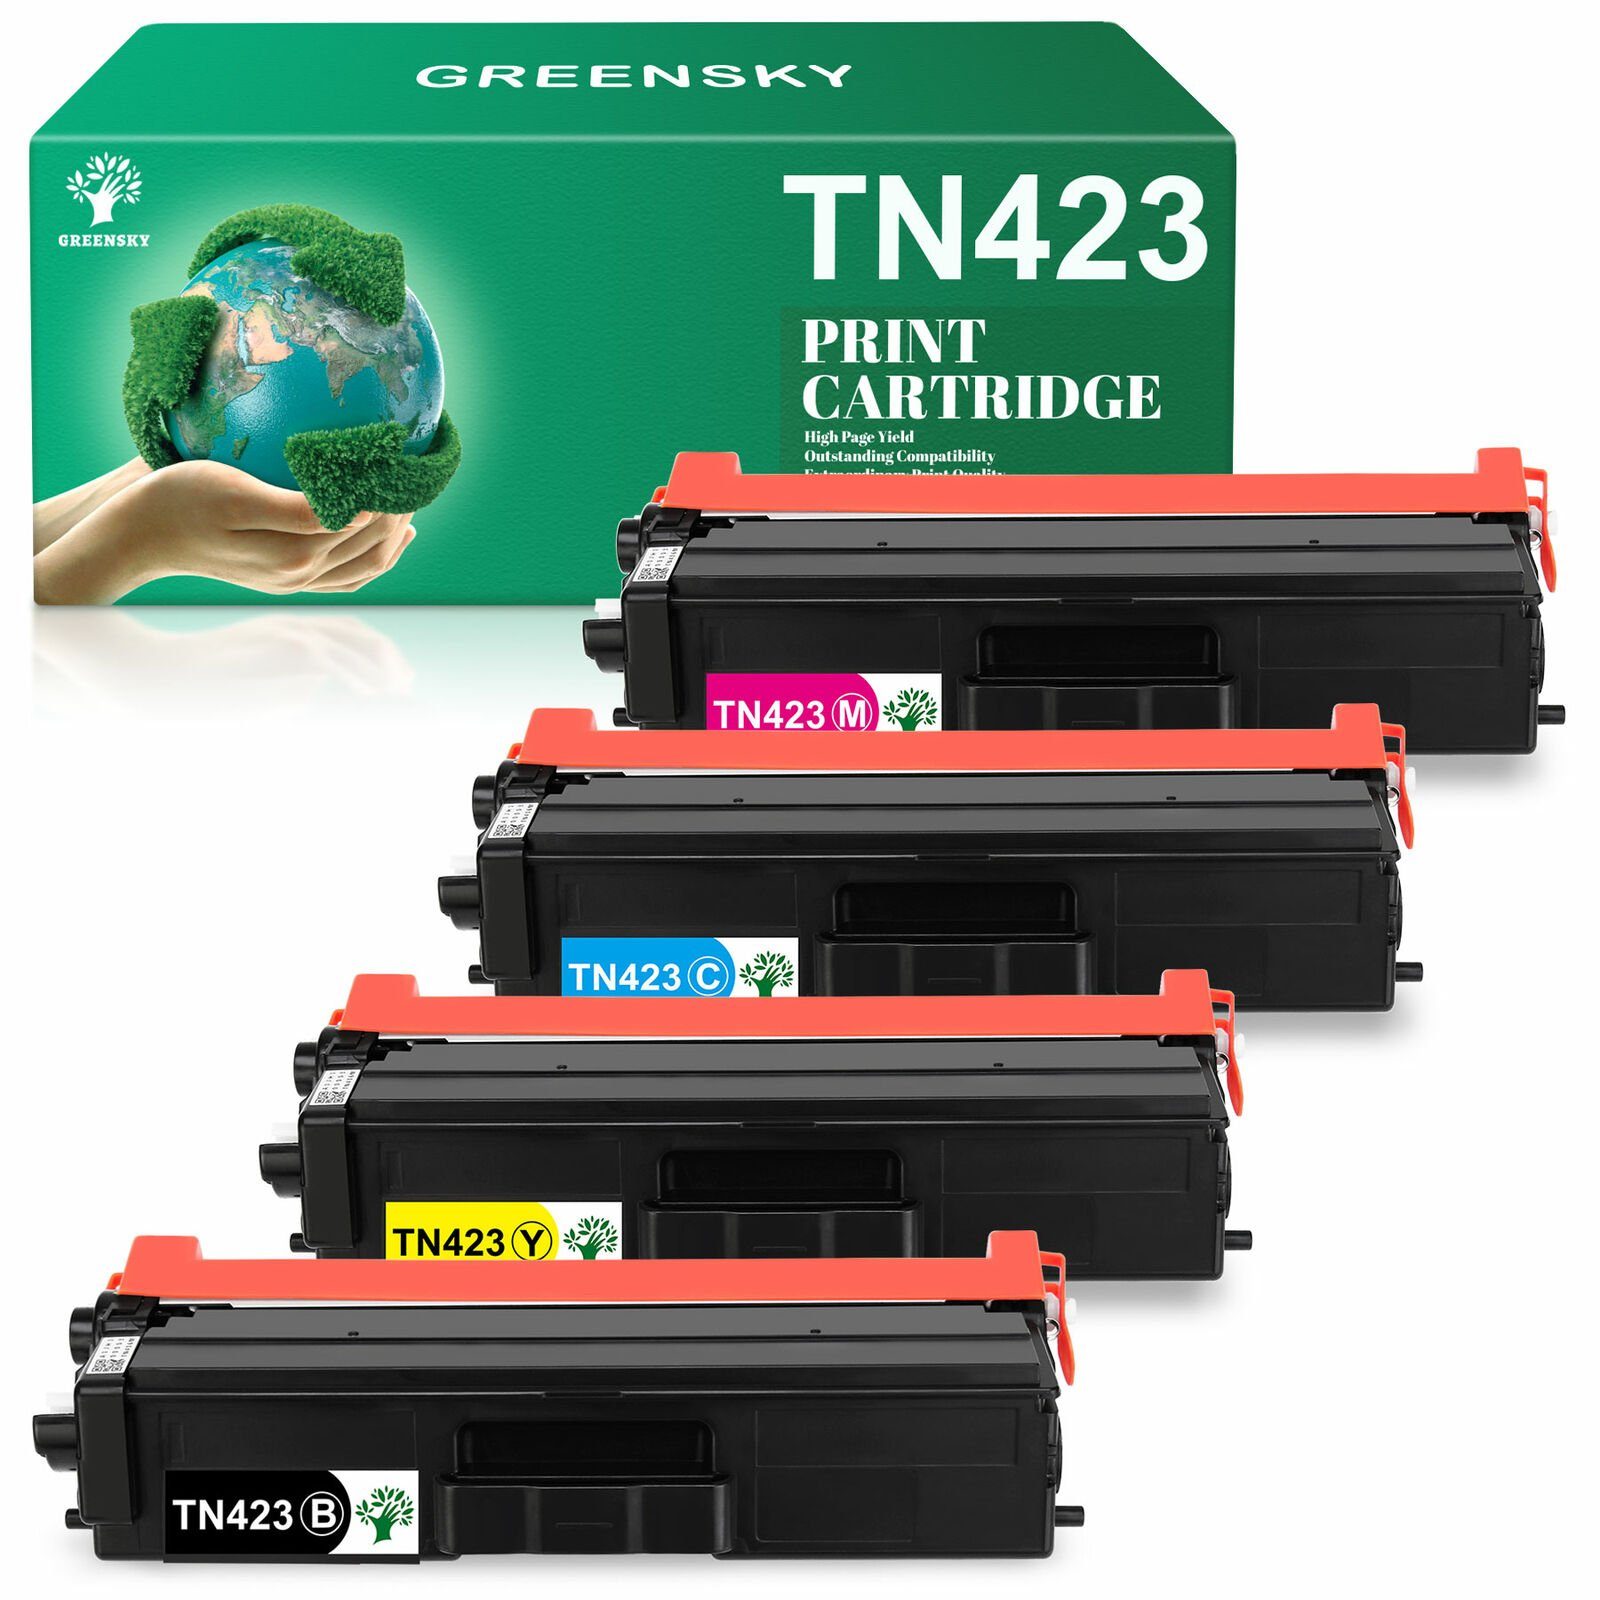 Greensky Tonerpatrone 1x TN423 Kompatibel mfc-l8690cdw Schwarz, TN Cyan, 1x 423 für 1x l8260cdw 1x dcp-l8410cdw Magenta, Gelb